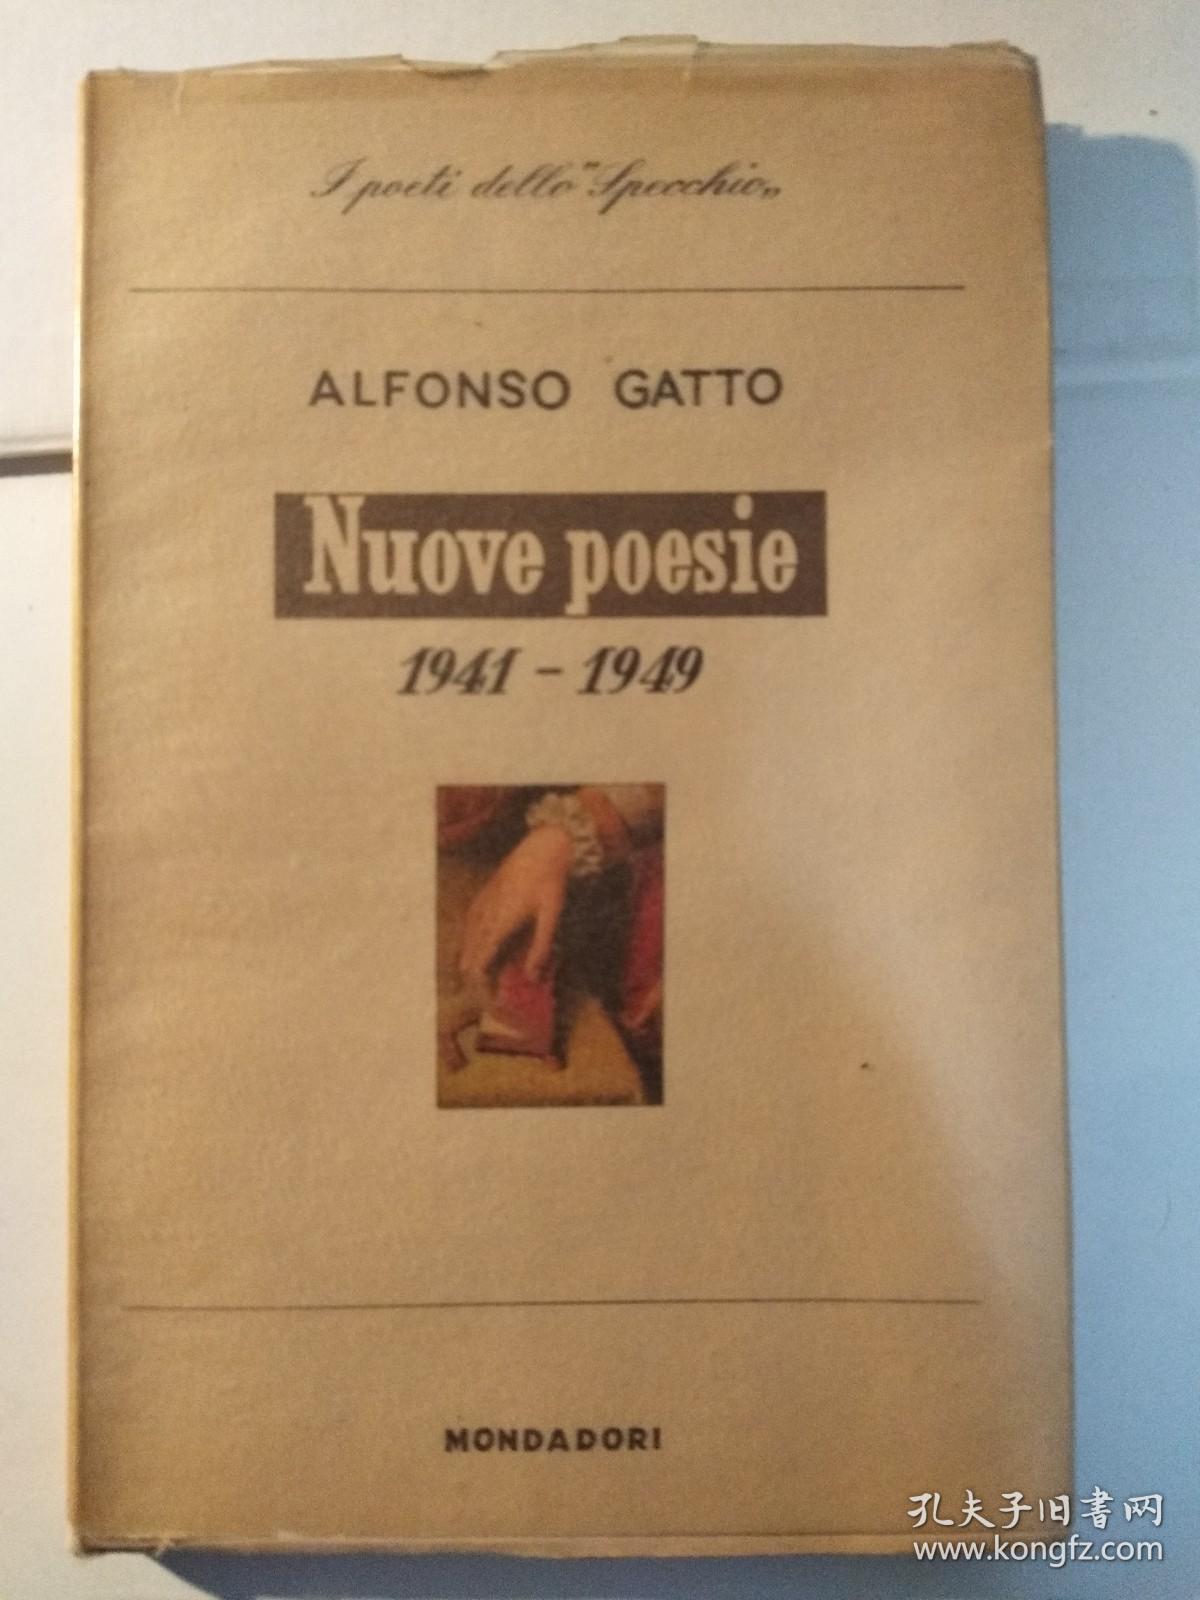 Nuove poesie, 1941-1949